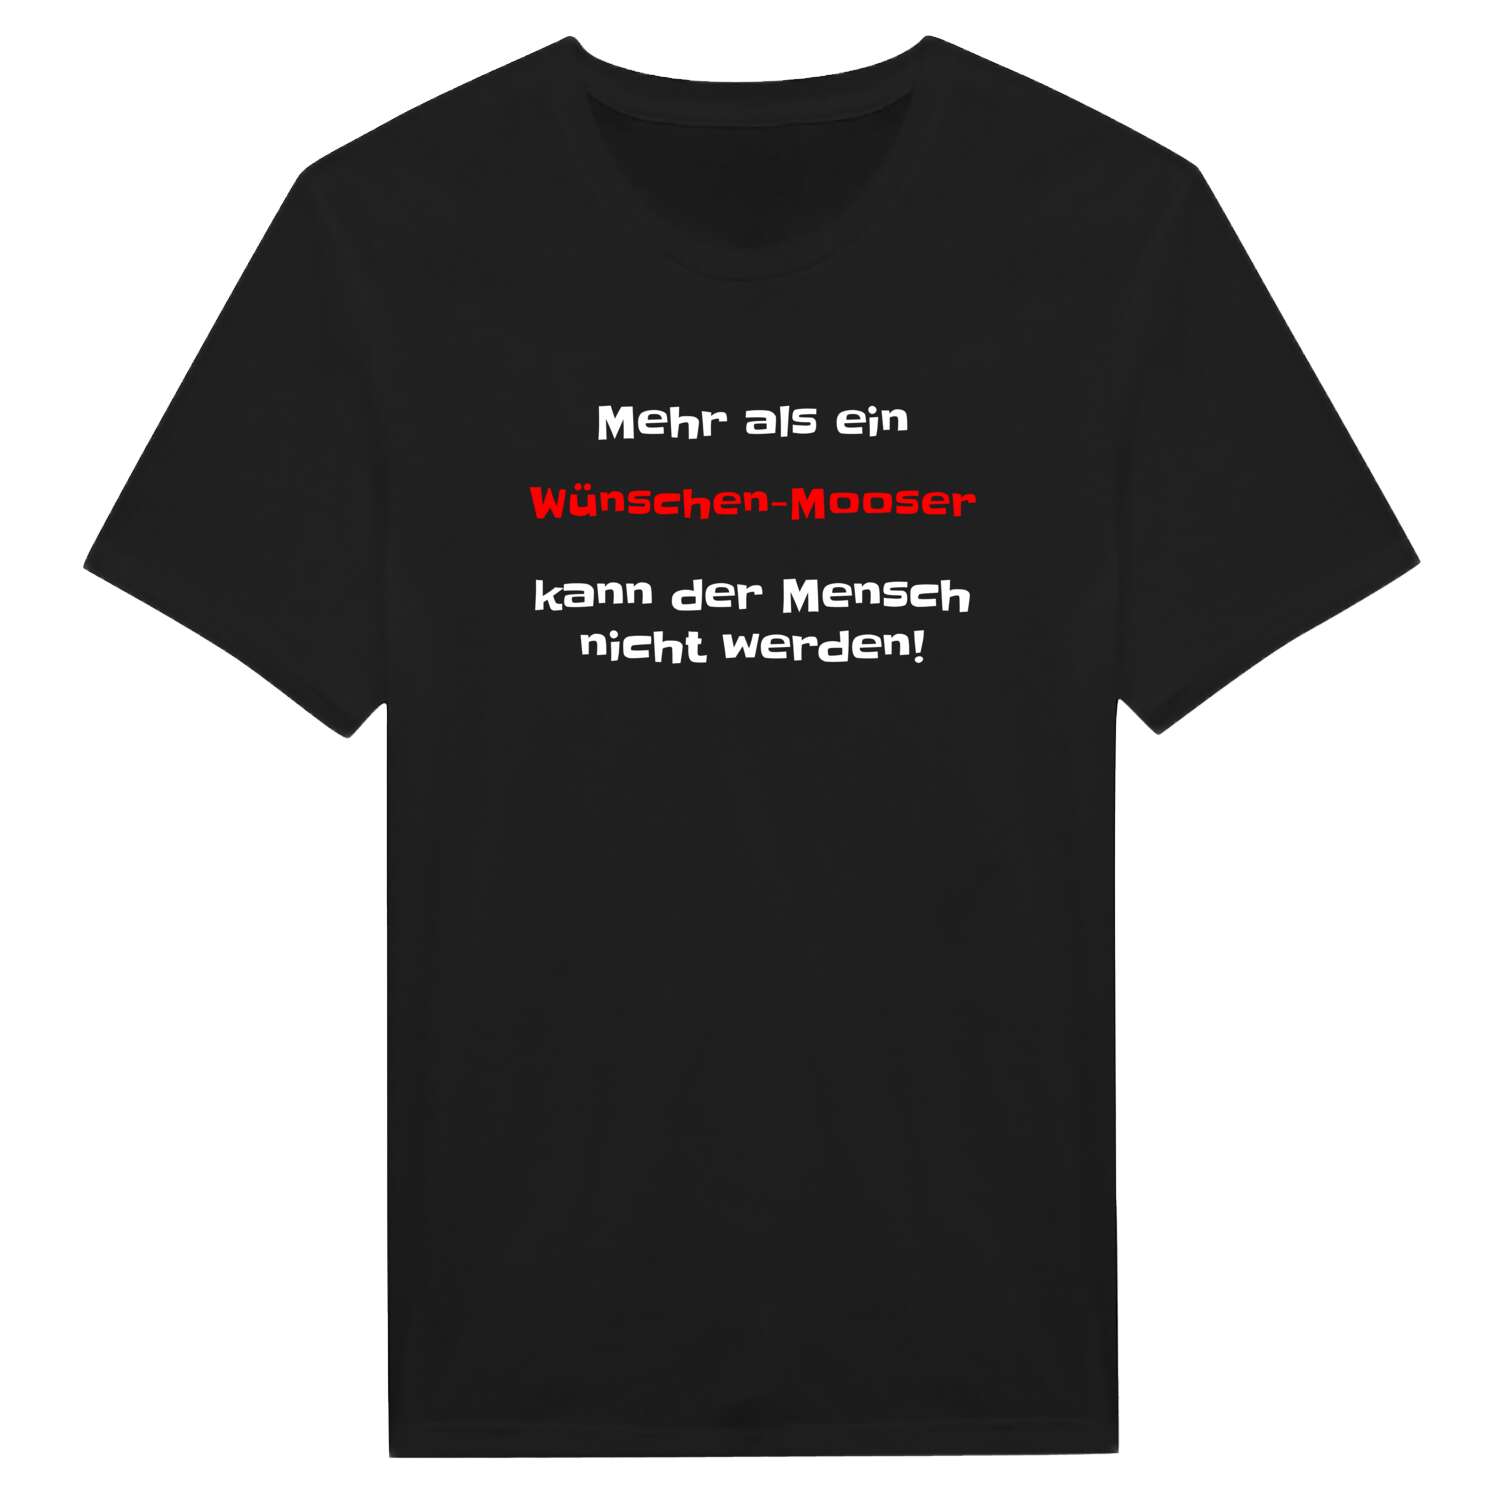 Wünschen-Moos T-Shirt »Mehr als ein«